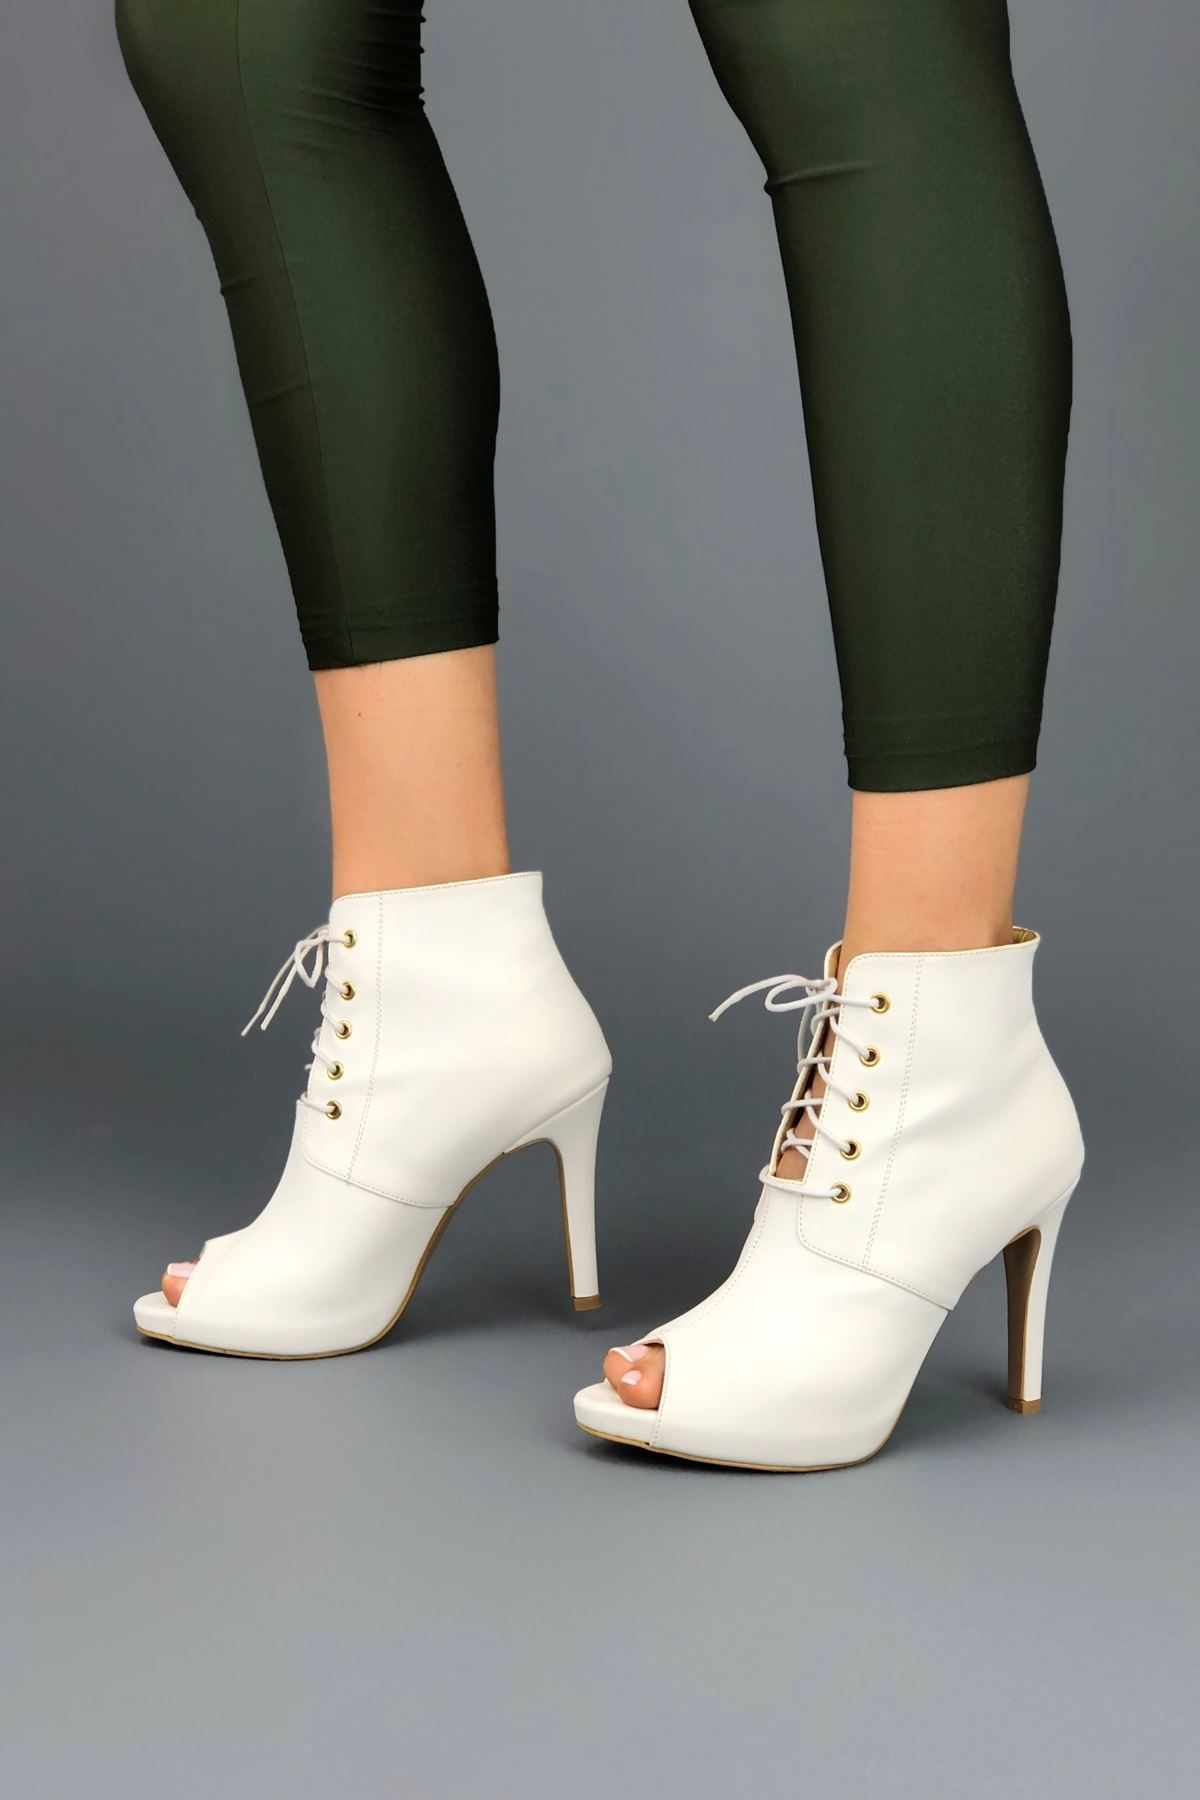 Narcis Beyaz Cilt Topuklu Kadın Ayakkabı